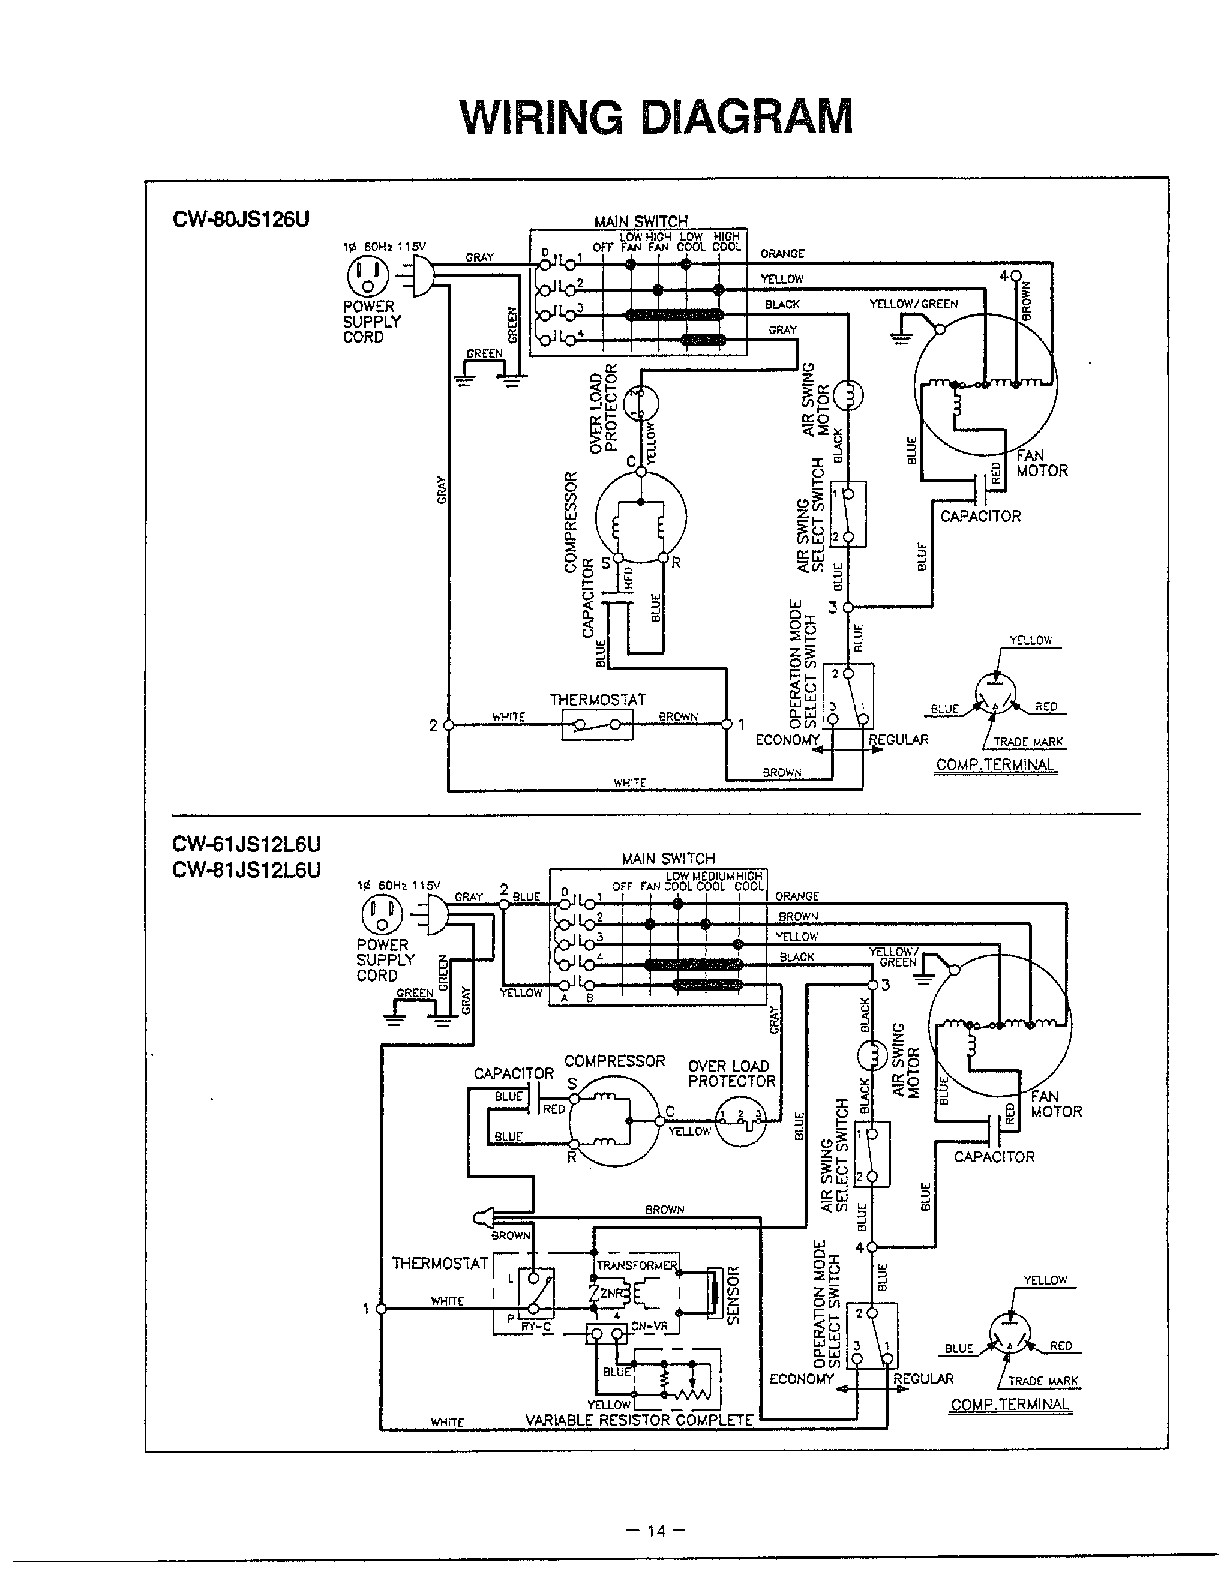 Wiring diagram evaporative air conditioner